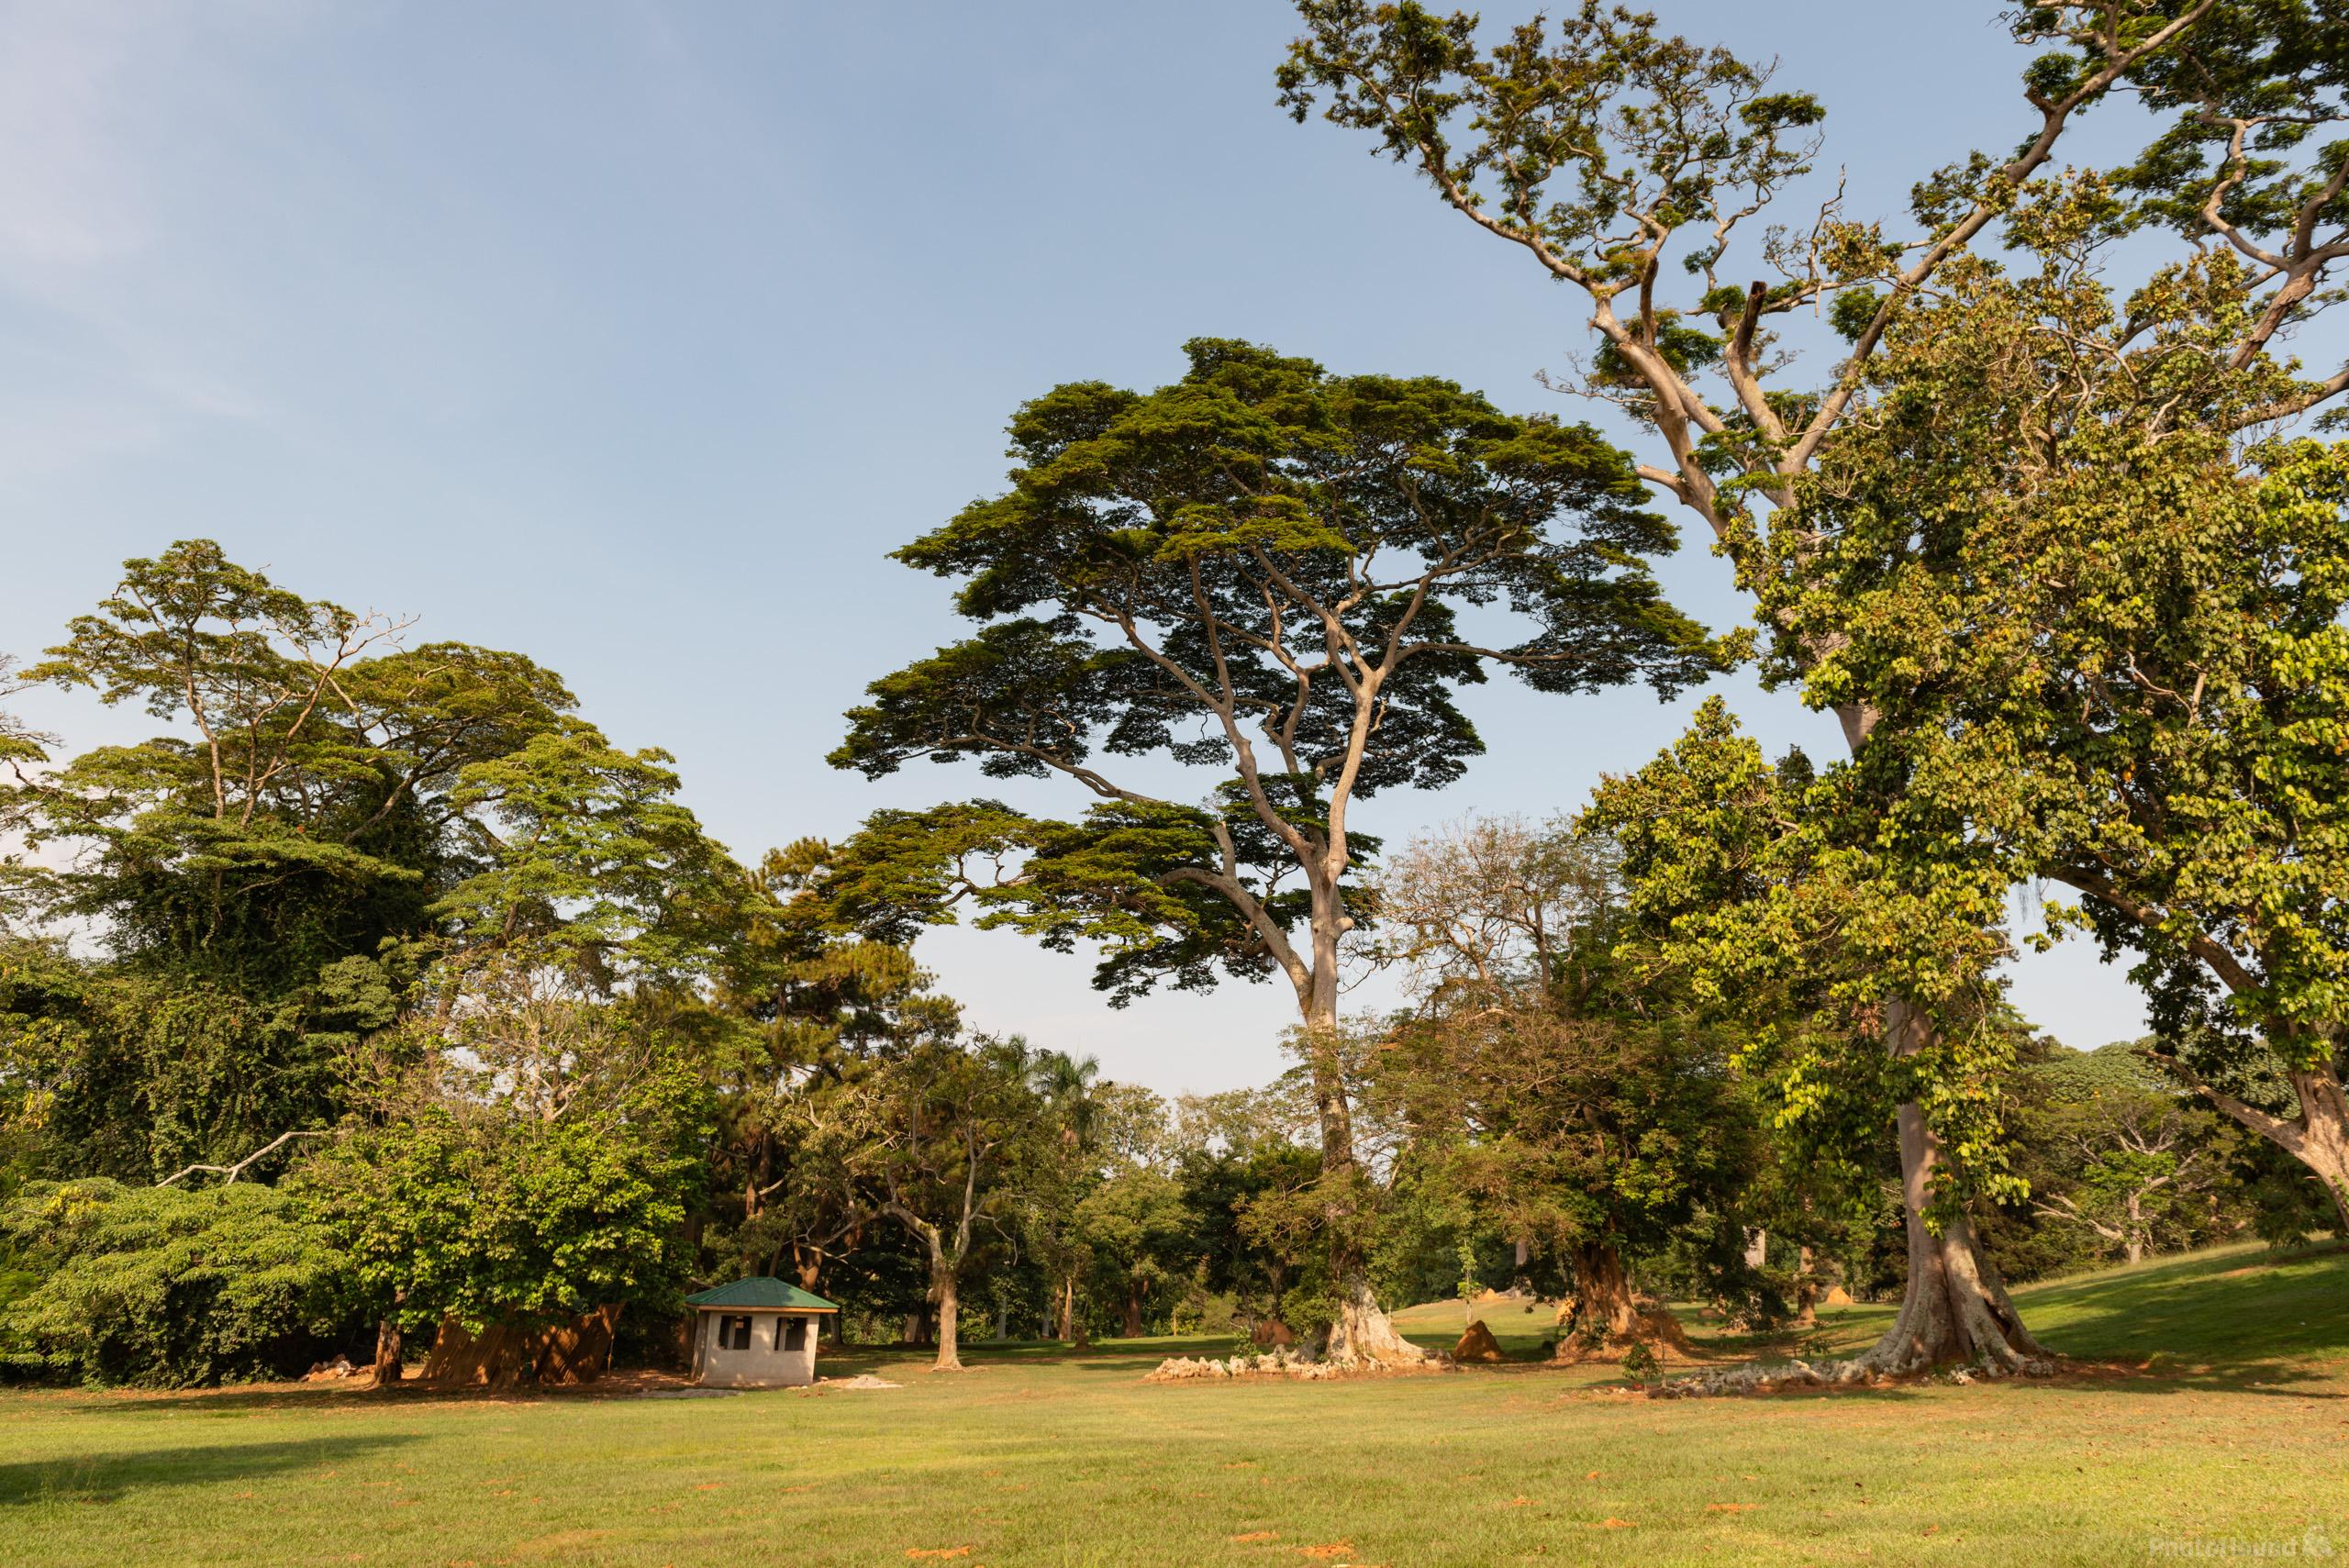 Image of Entebbe Botanical Garden by Luka Esenko